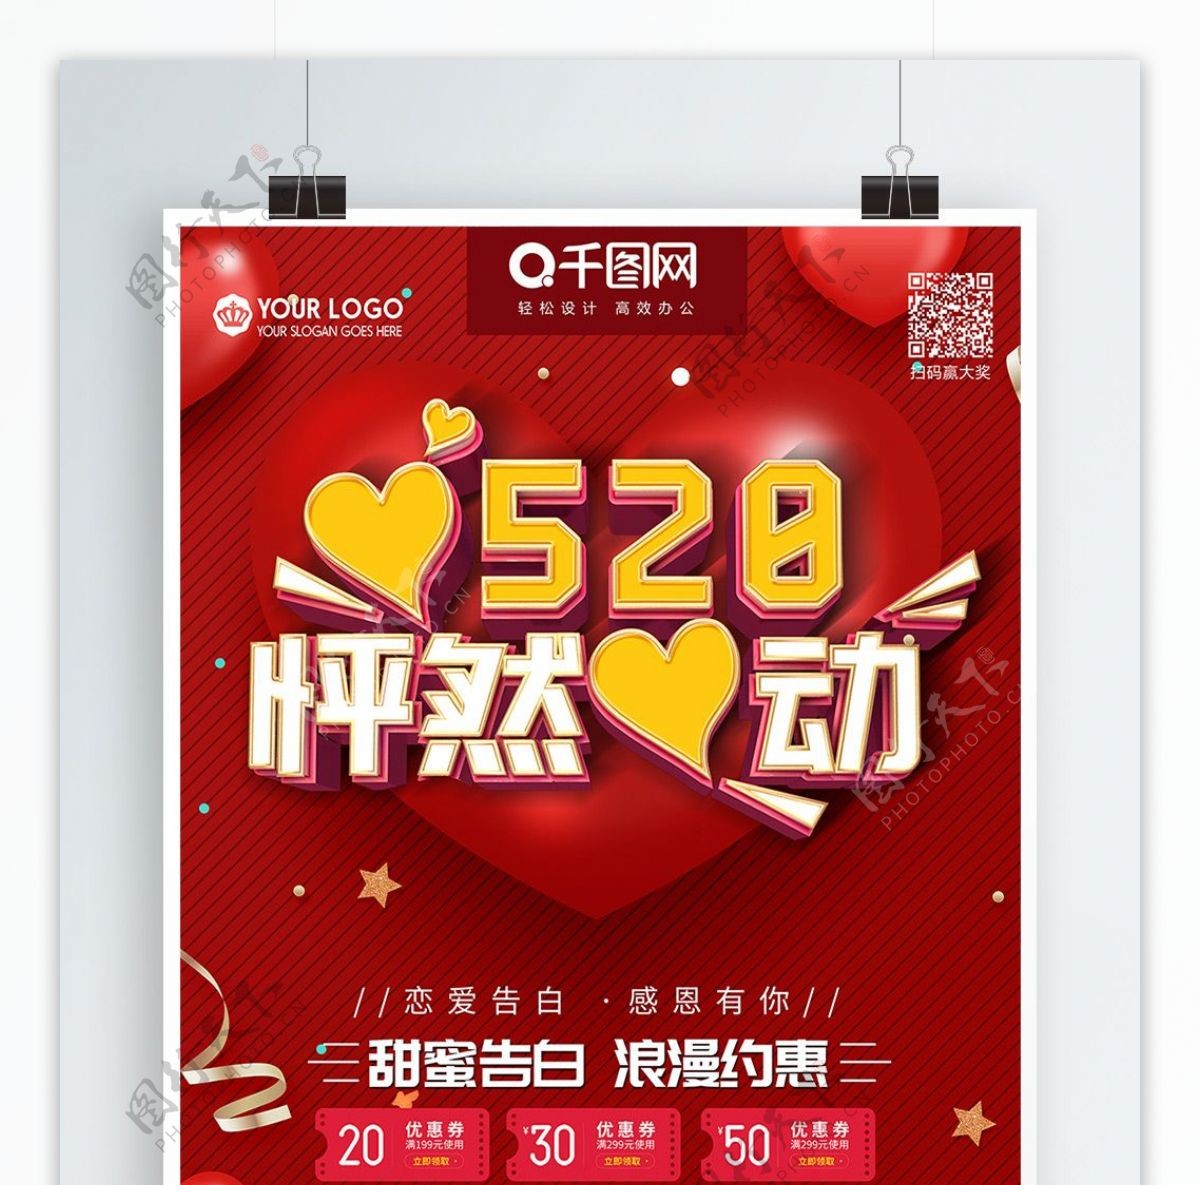 C4D立体字520怦然心动促销宣传海报